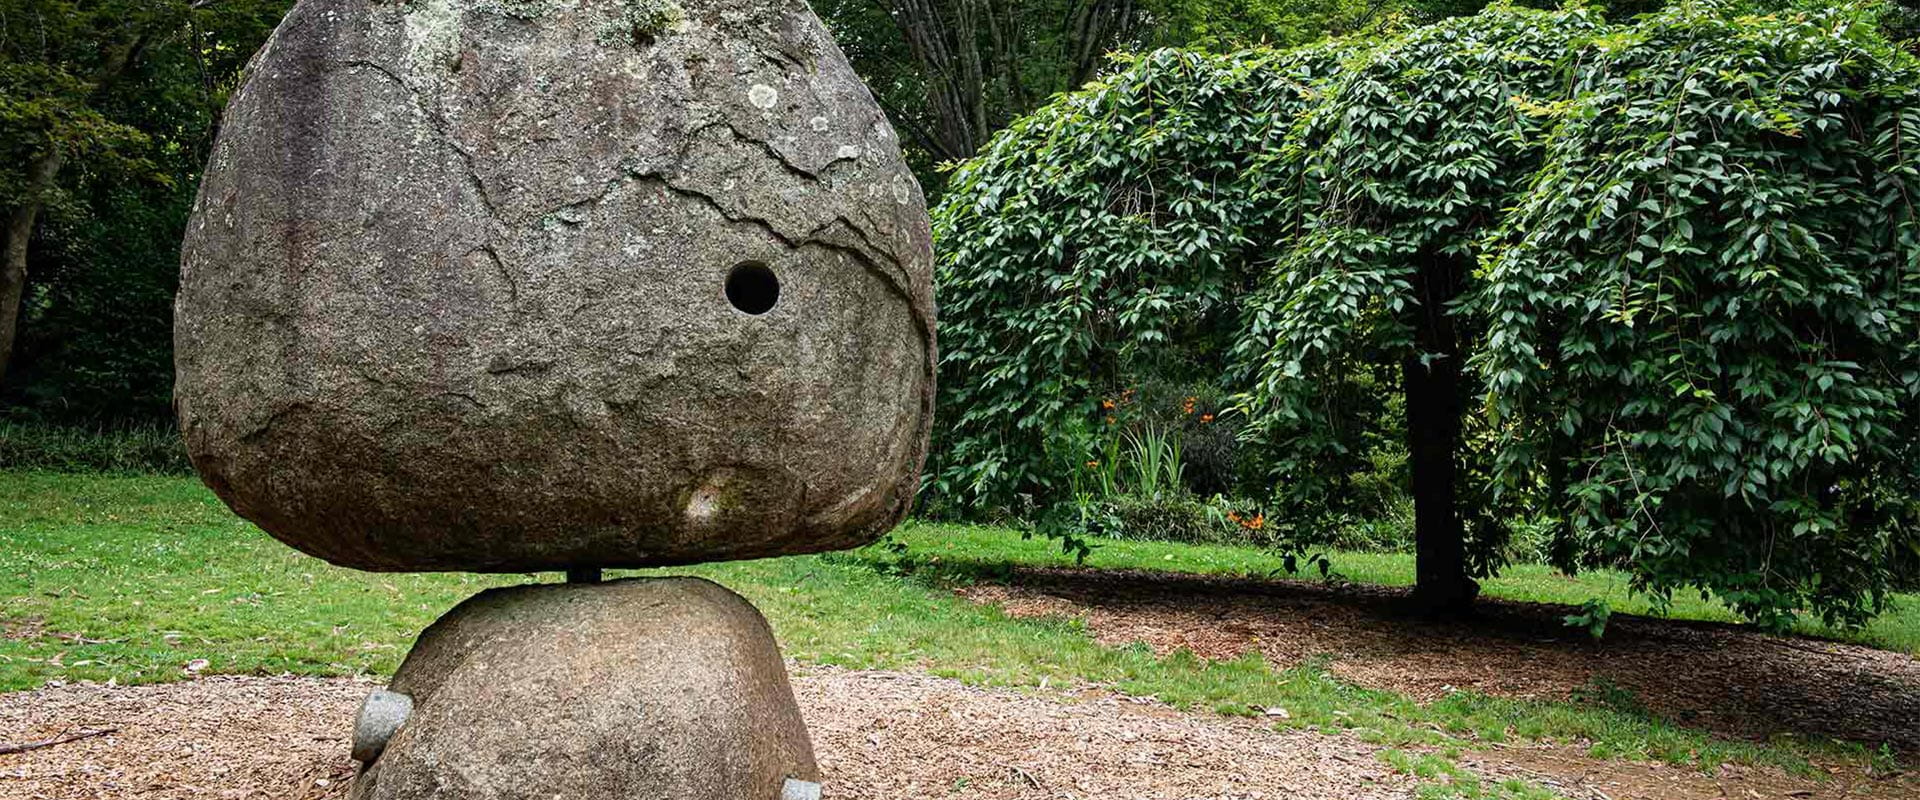 A sculpture in a beautiful garden.